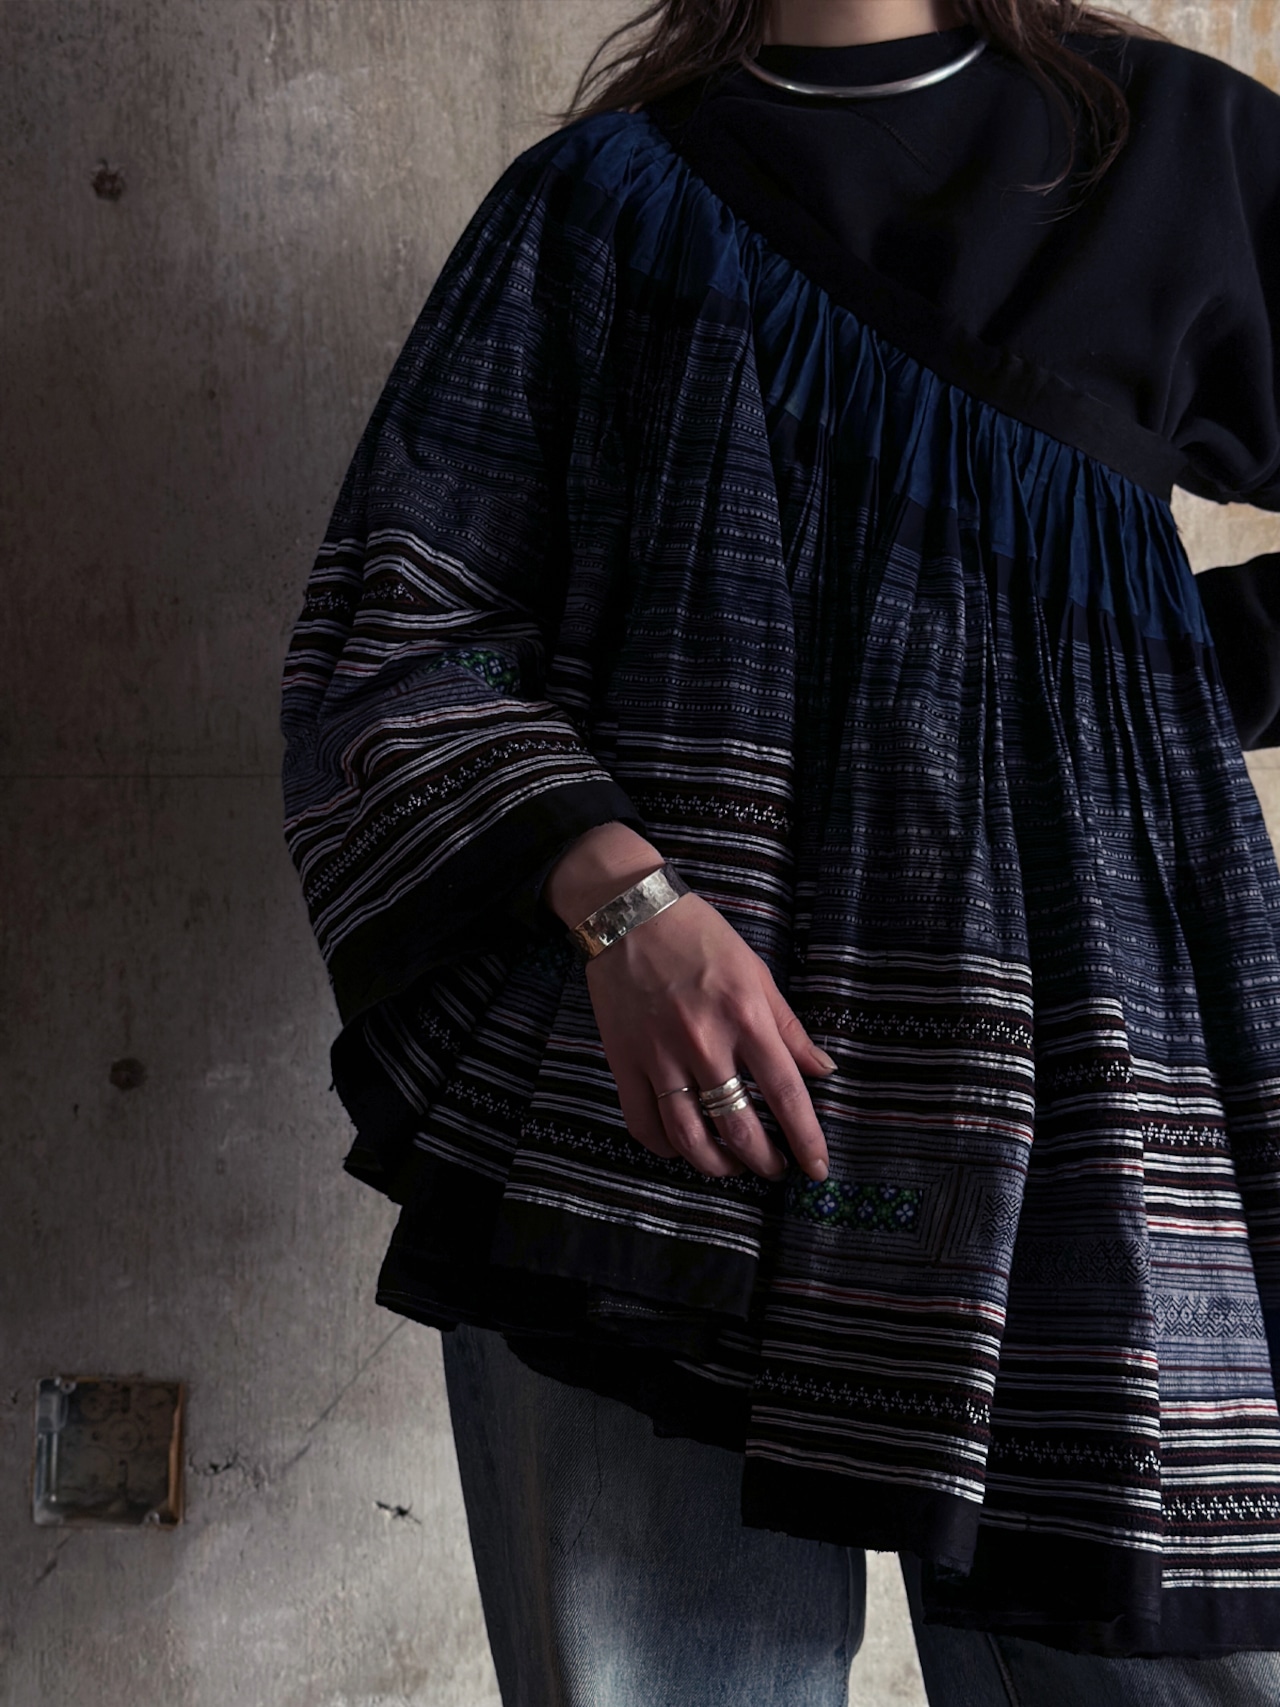 H’mong tribe／Vintage indigo batik skirt